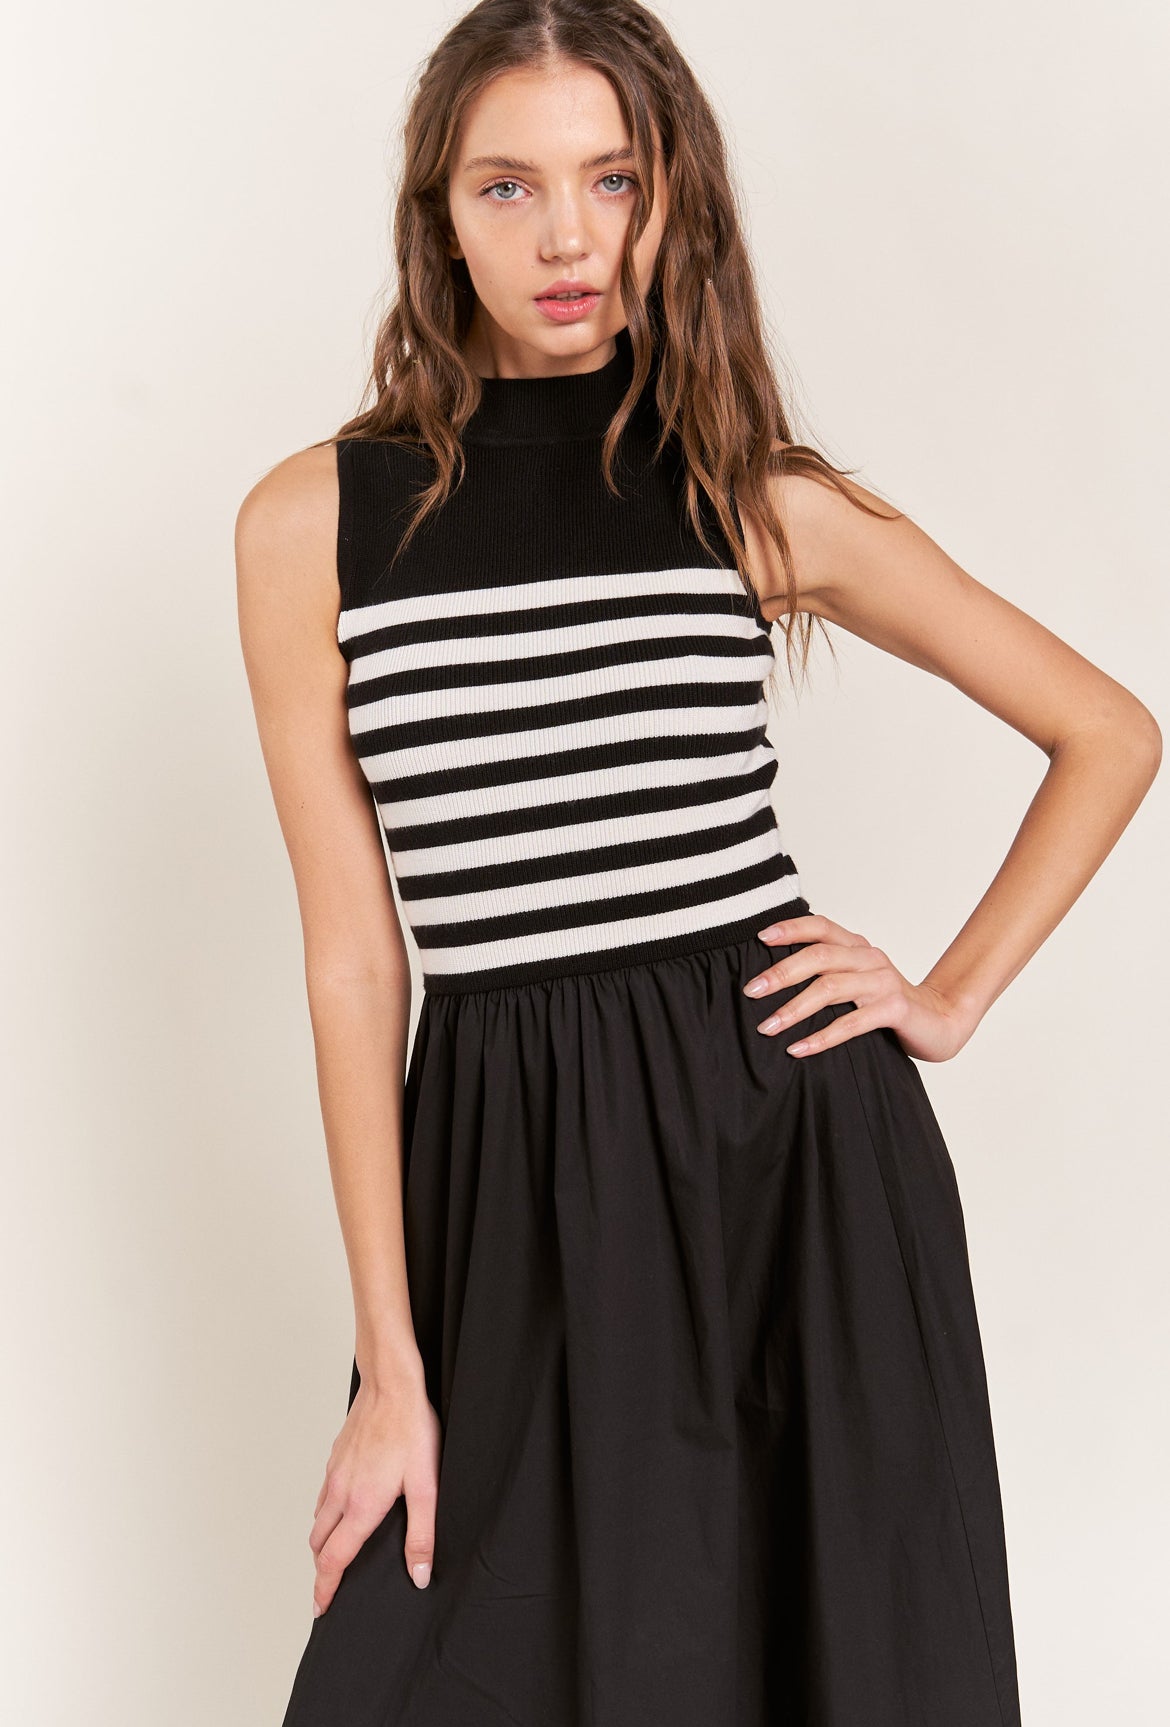 Striped Knit Dress in Black